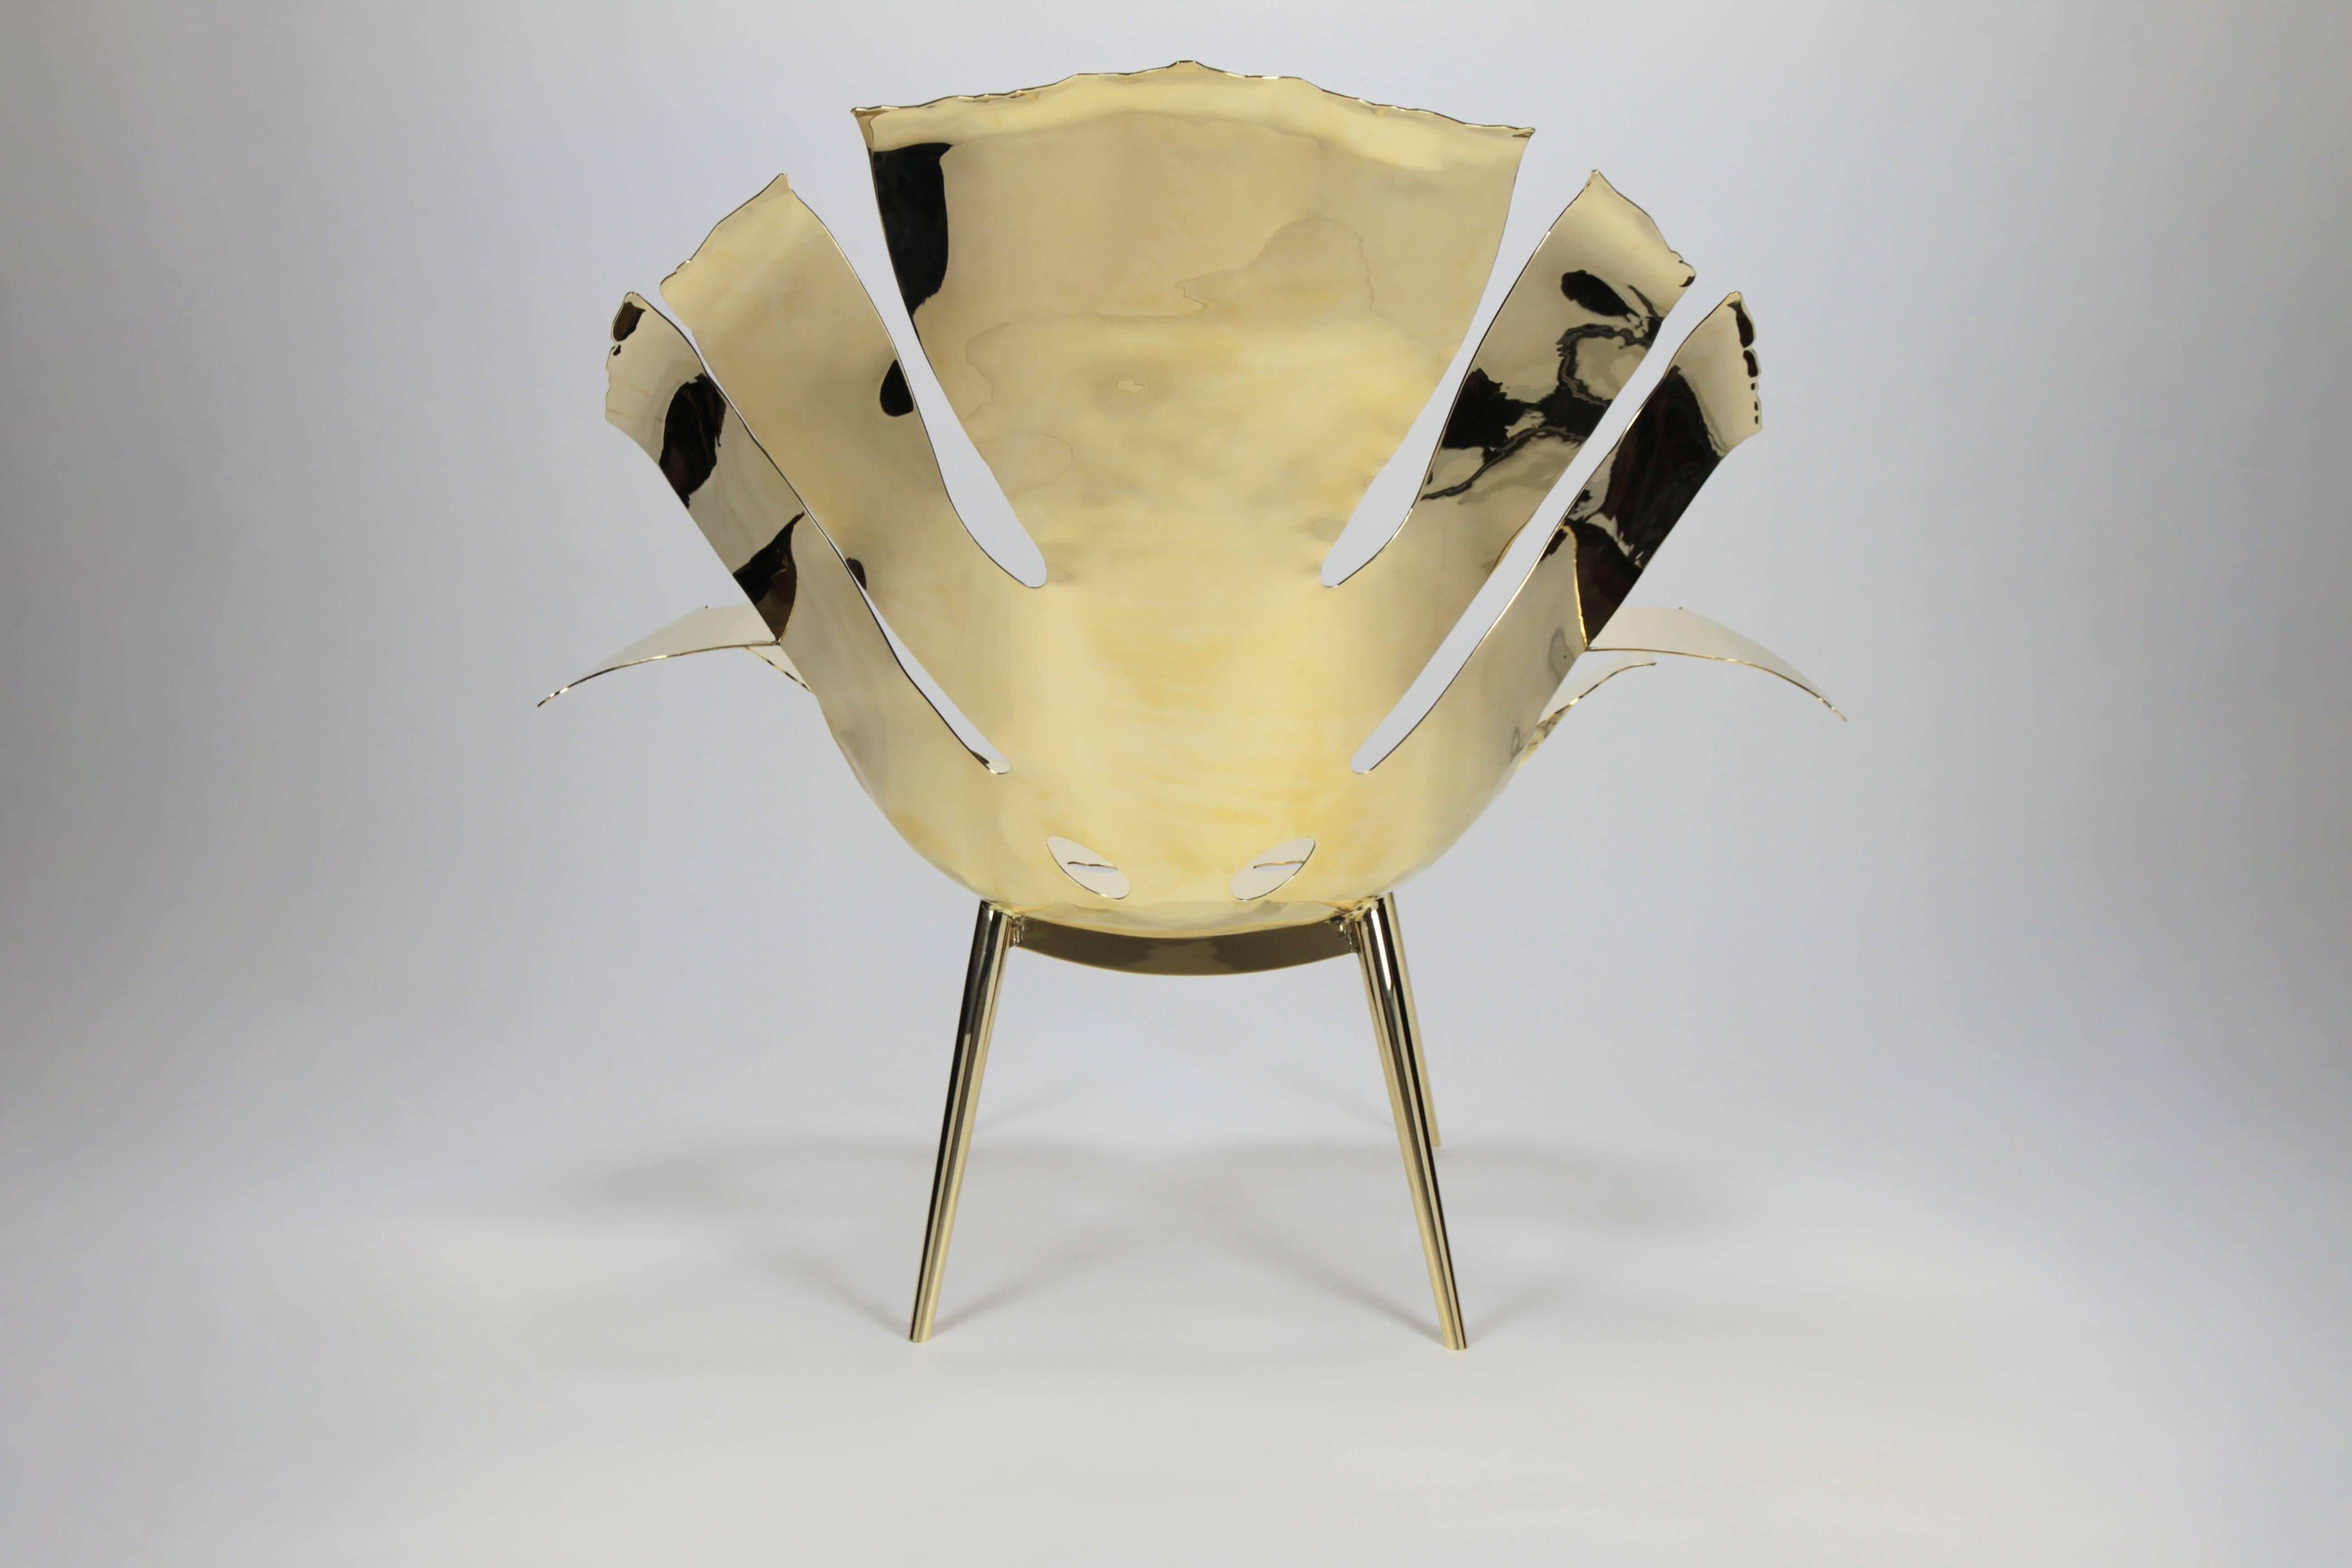 chair shaped like a leaf